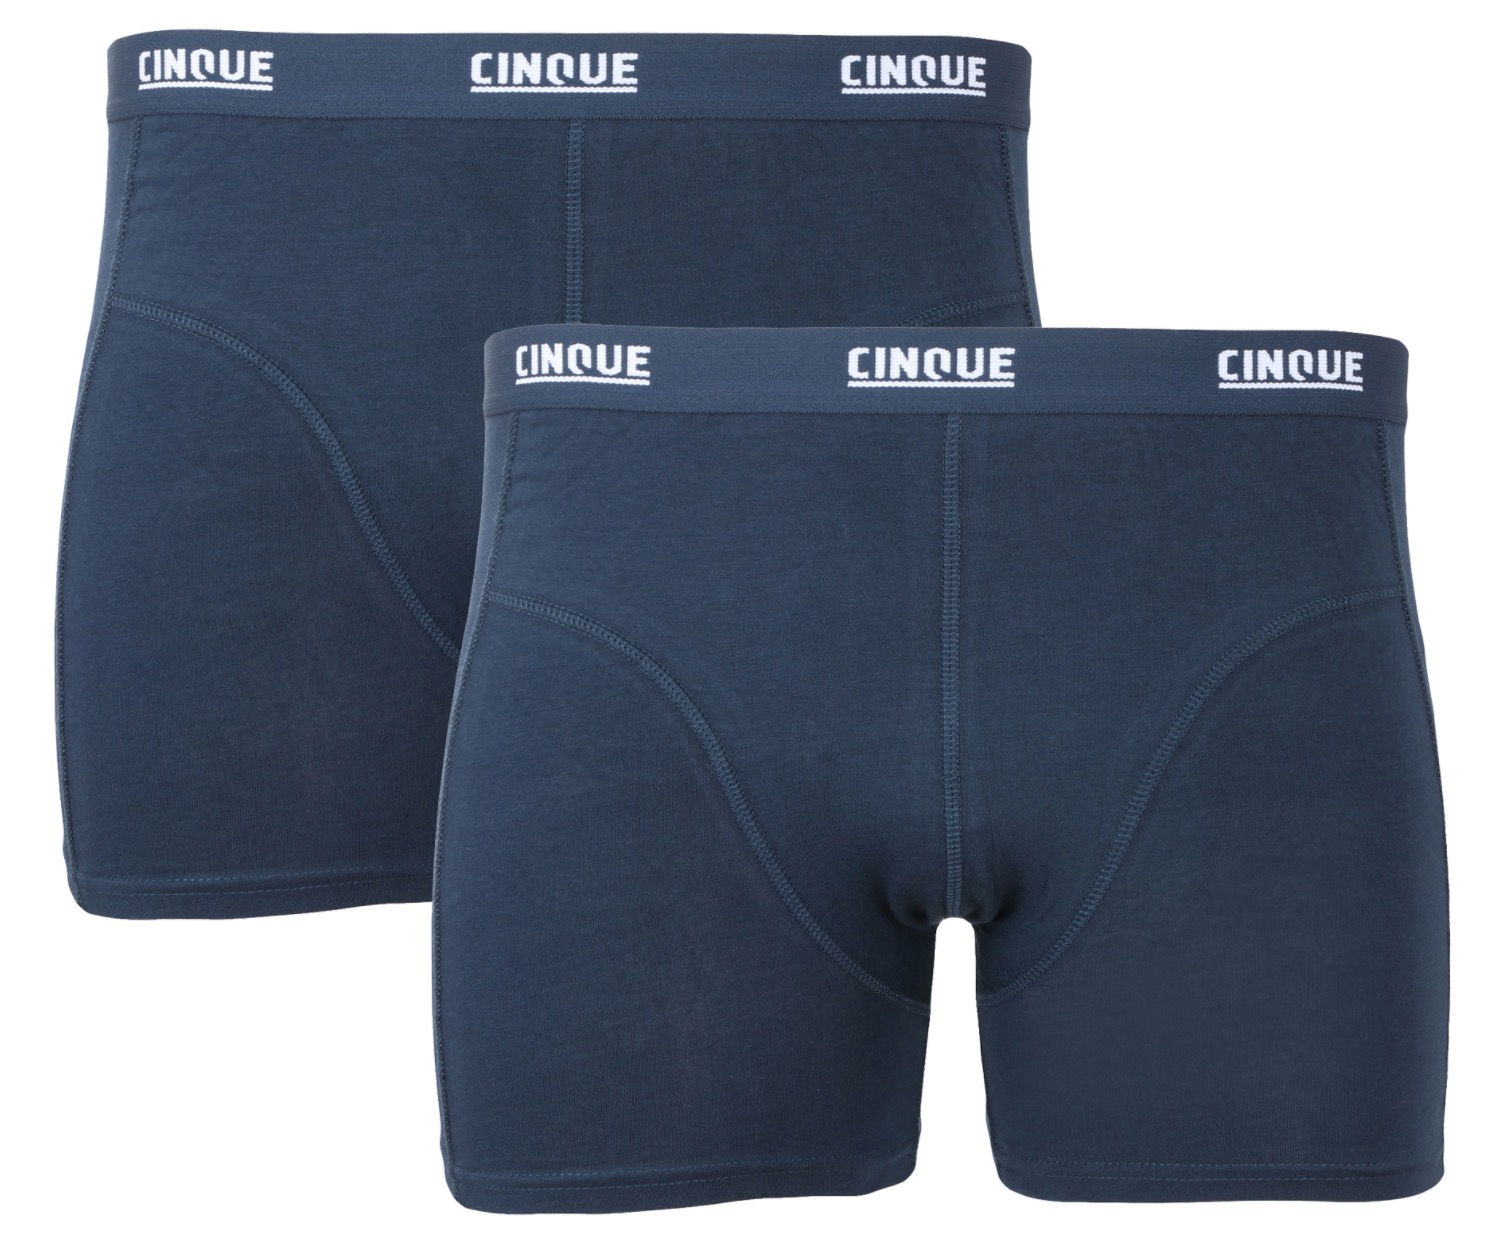 2er Pack CINQUE Herren Boxershorts in verschiedenen Farben für nur 5,99 Euro inkl. Versand